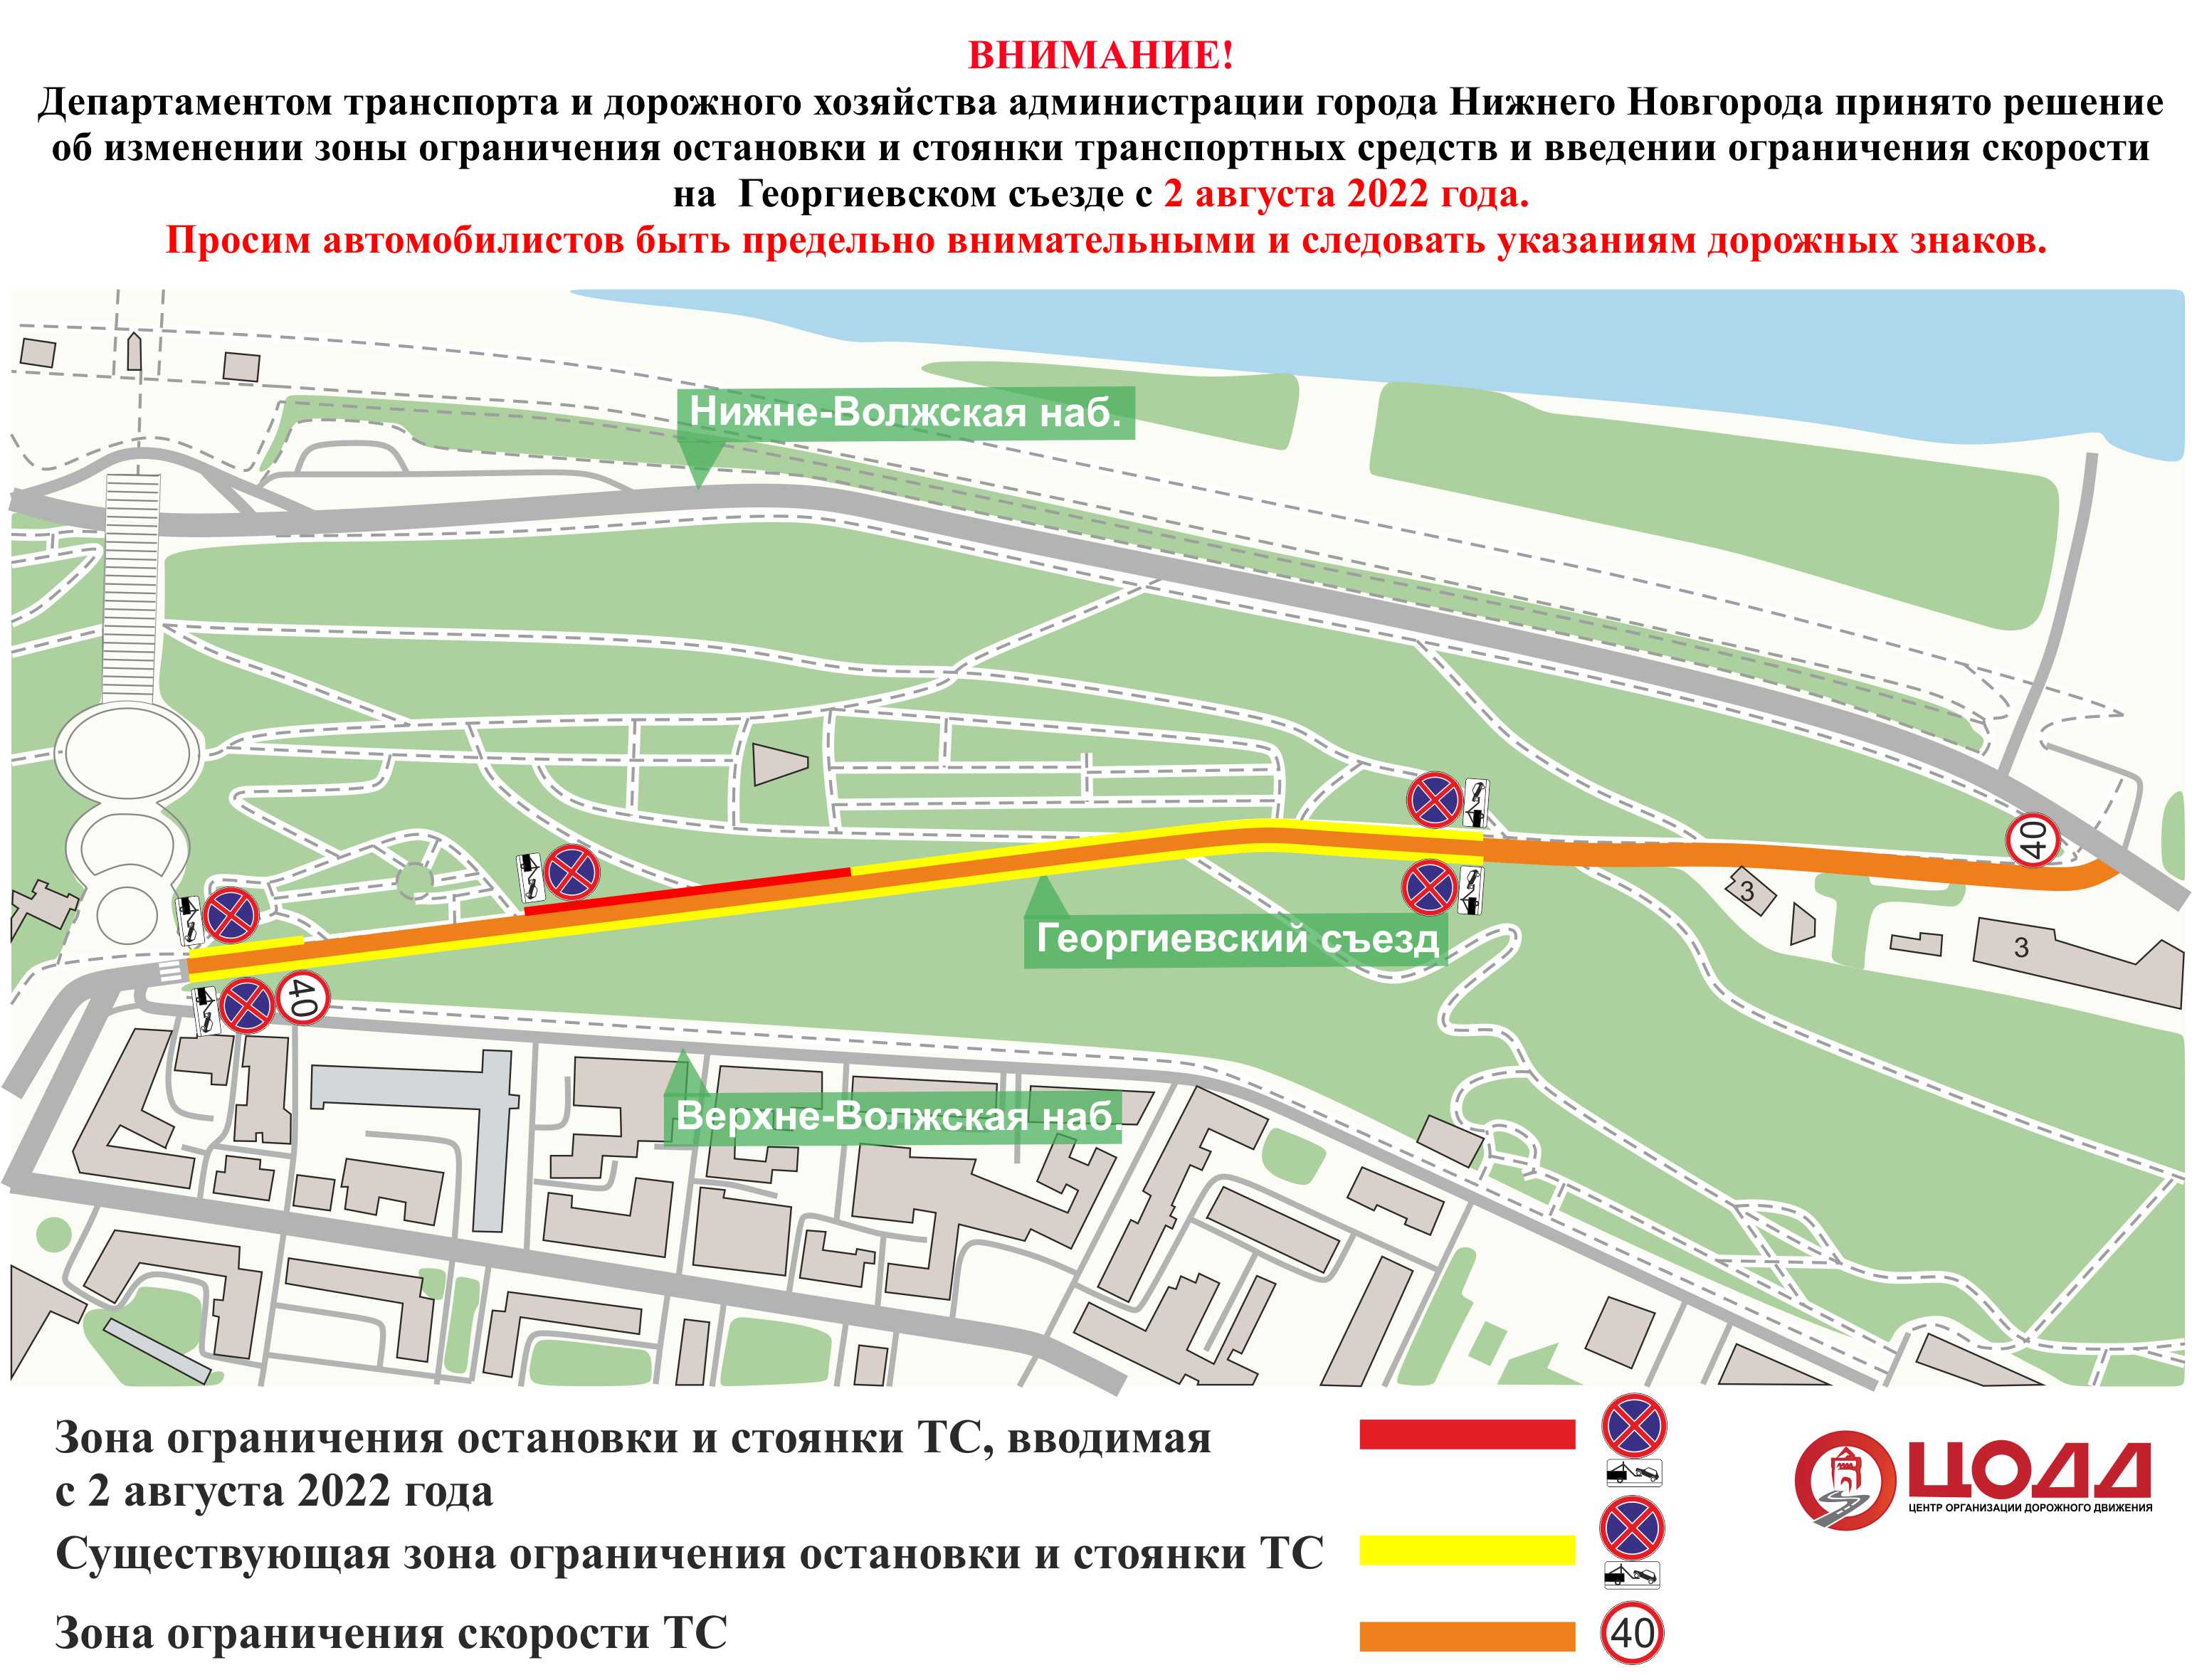 Зона парковки увеличится на Георгиевском съезде в Нижнем Новгороде  - фото 1